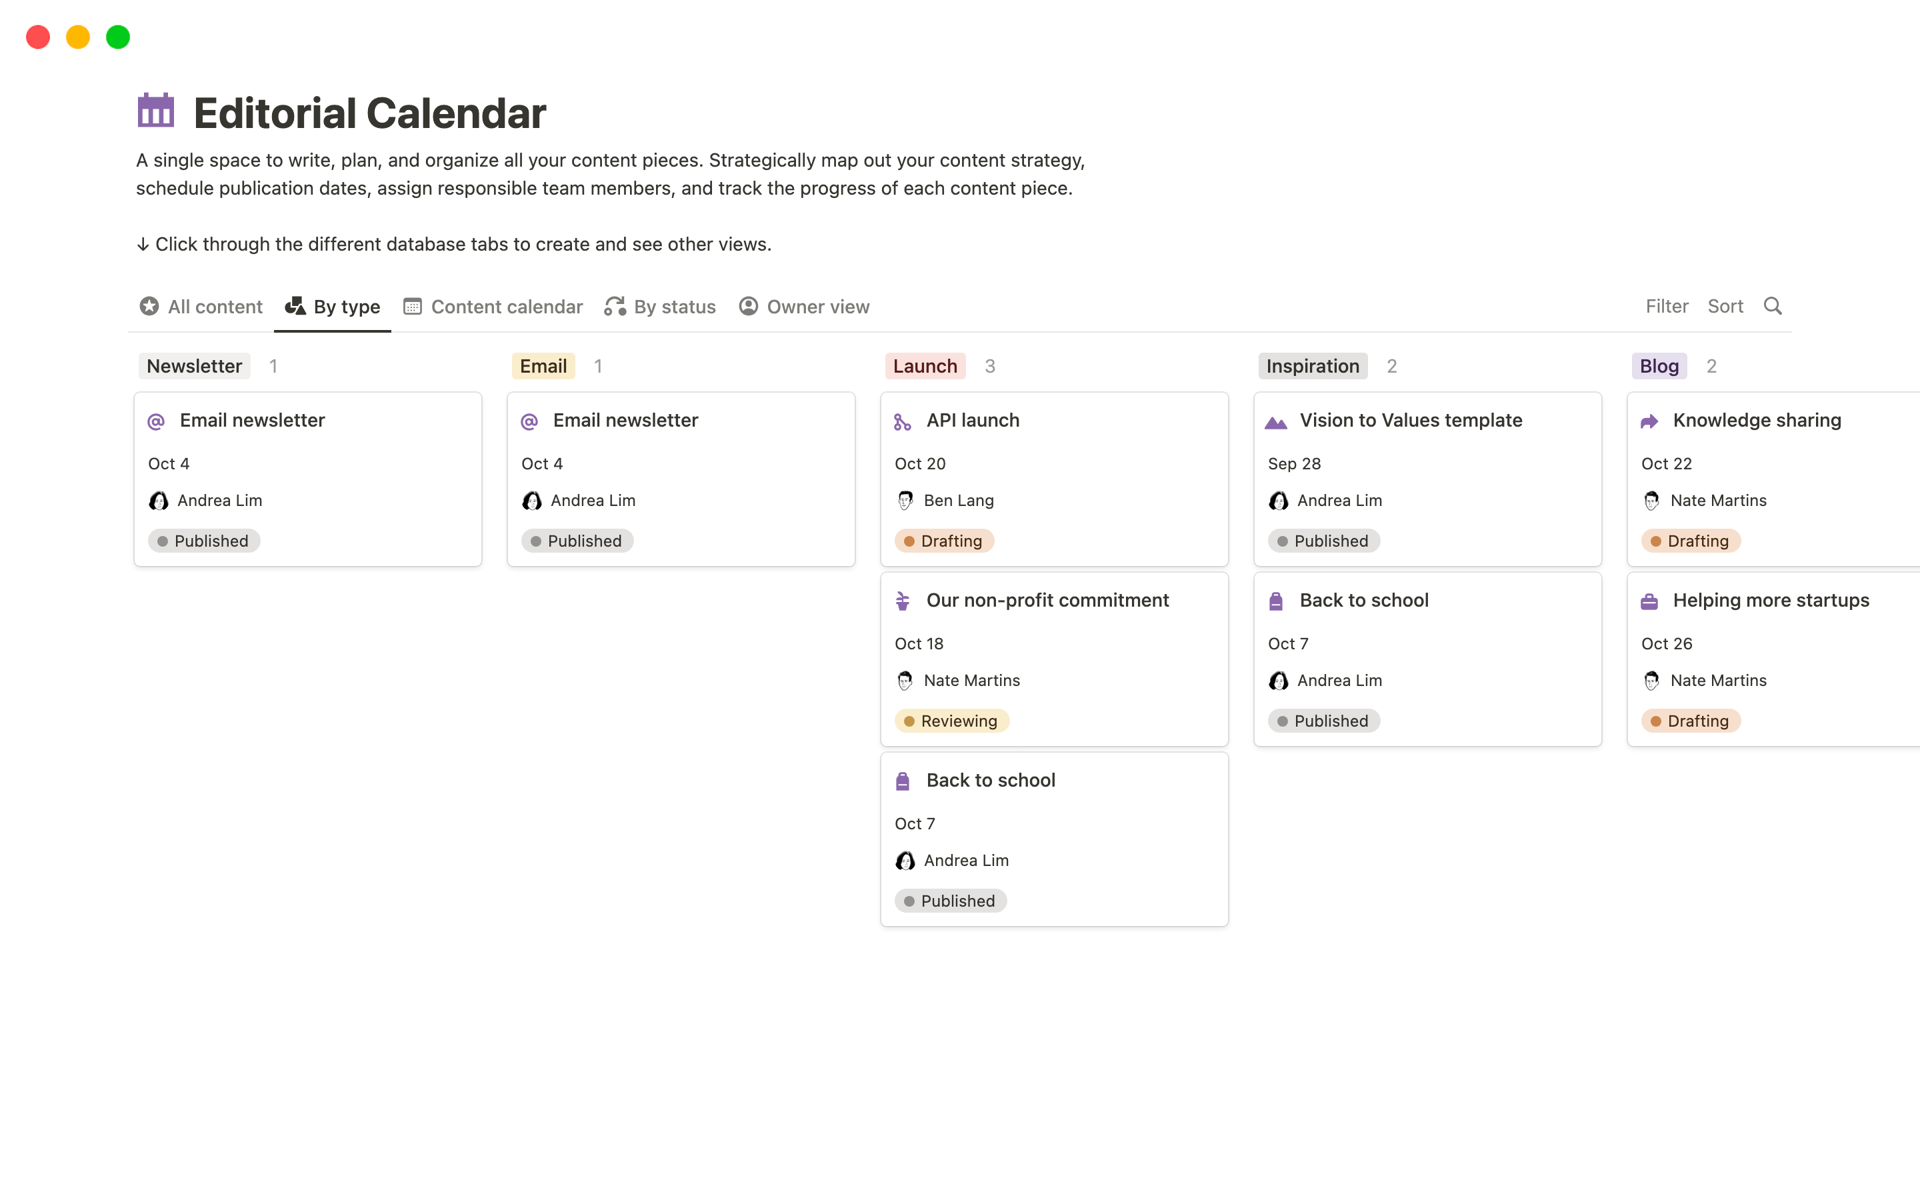 Optimiza el proceso de creación de contenido con nuestra versátil plantilla de calendario editorial.